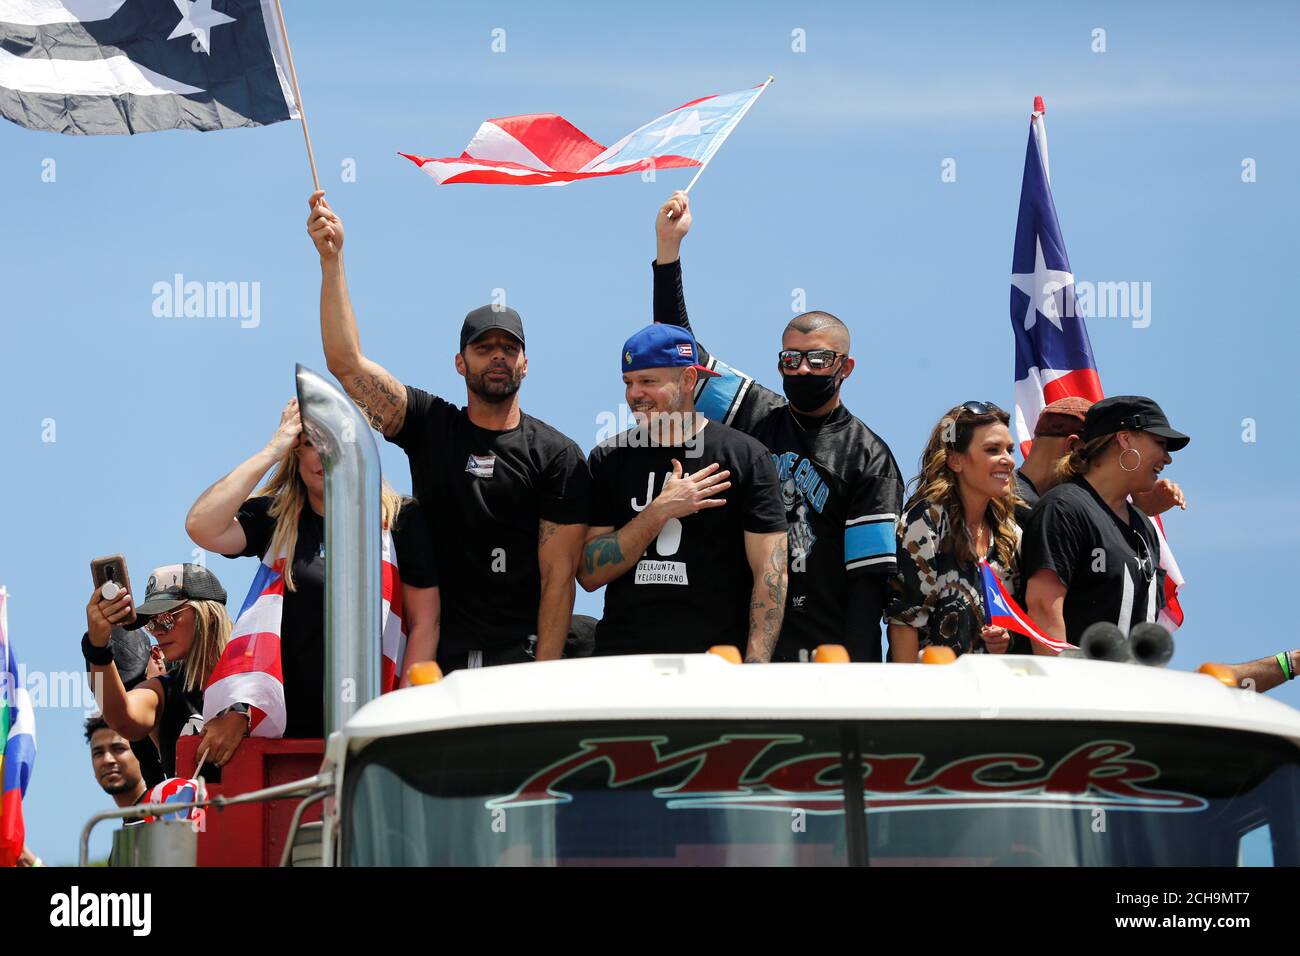 Celebridades puertorriqueñas incluyendo Residente, Bad Bunny y Ricky Martin  se unen a los manifestantes durante una protesta pidiendo la renuncia del  gobernador Ricardo Rosselló en San Juan, Puerto Rico 22 de julio